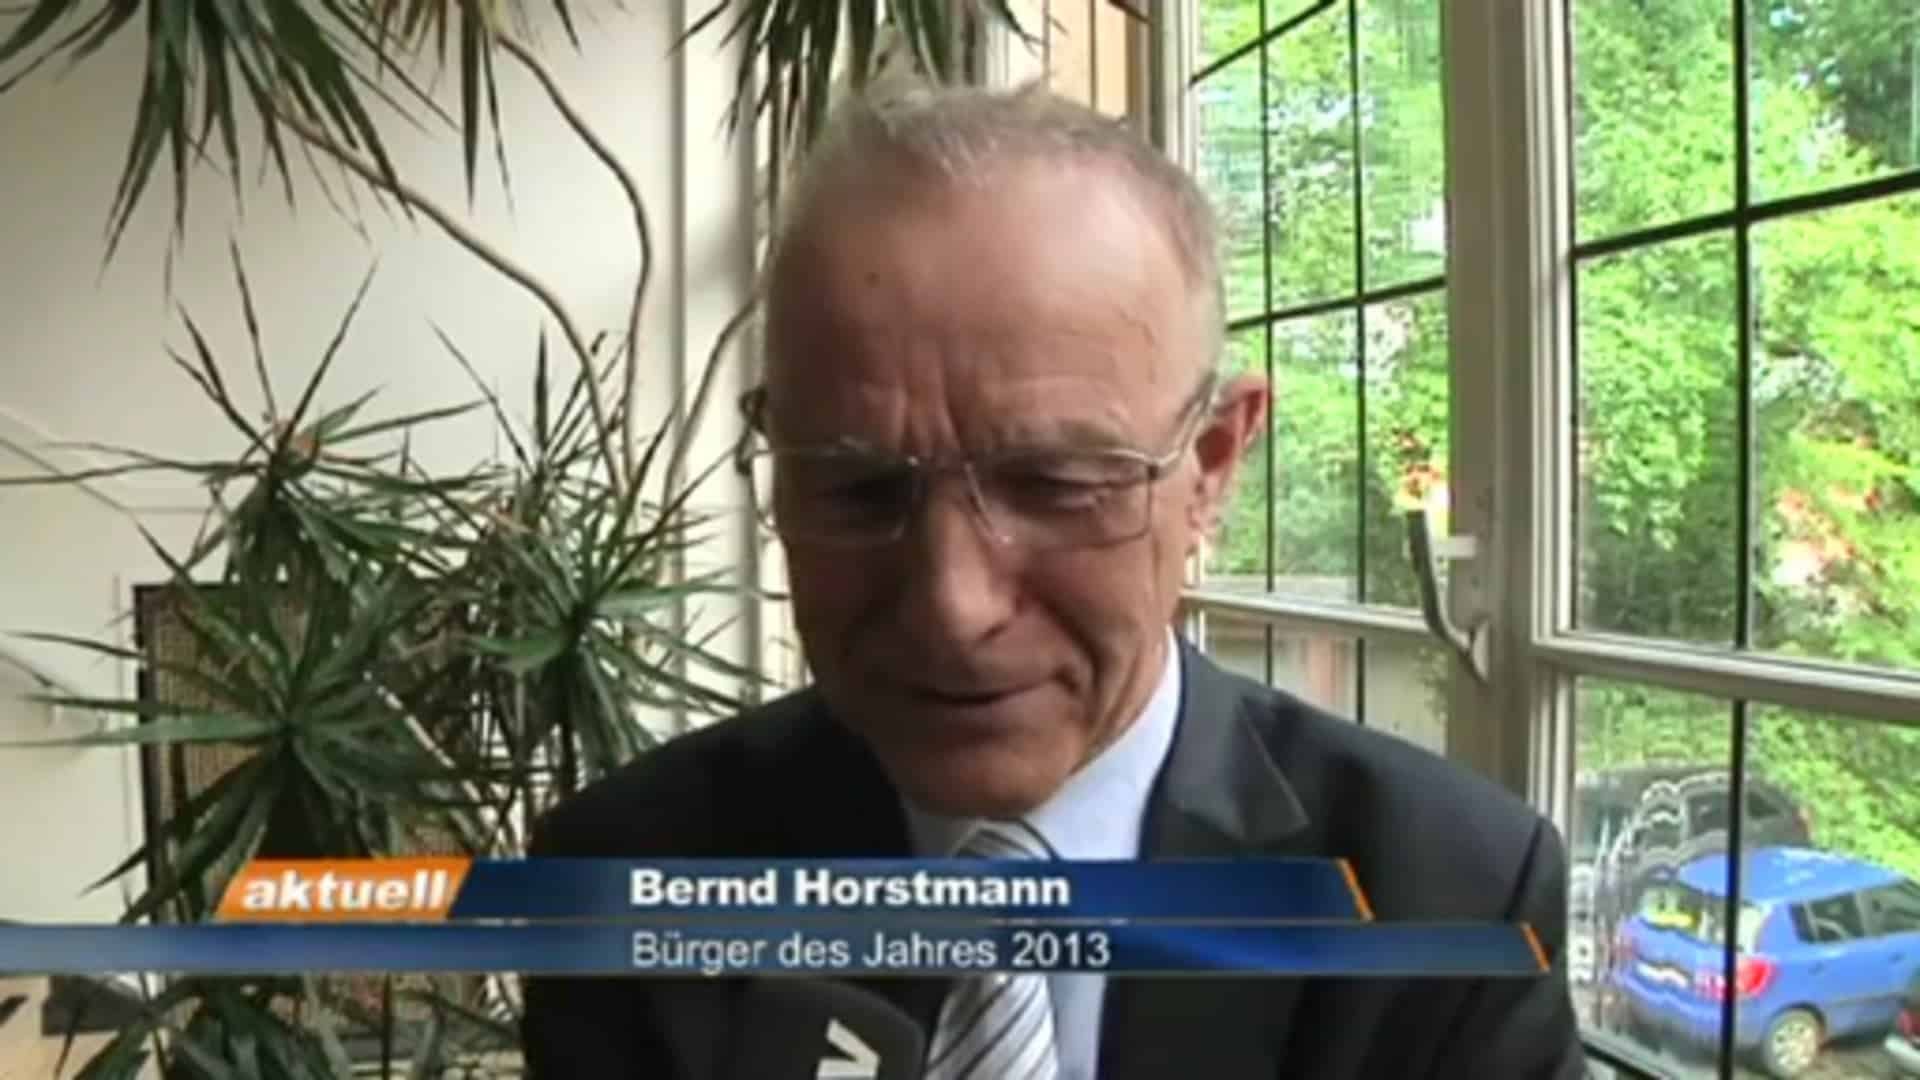 Bernd Horstmann ist Bürger des Jahres